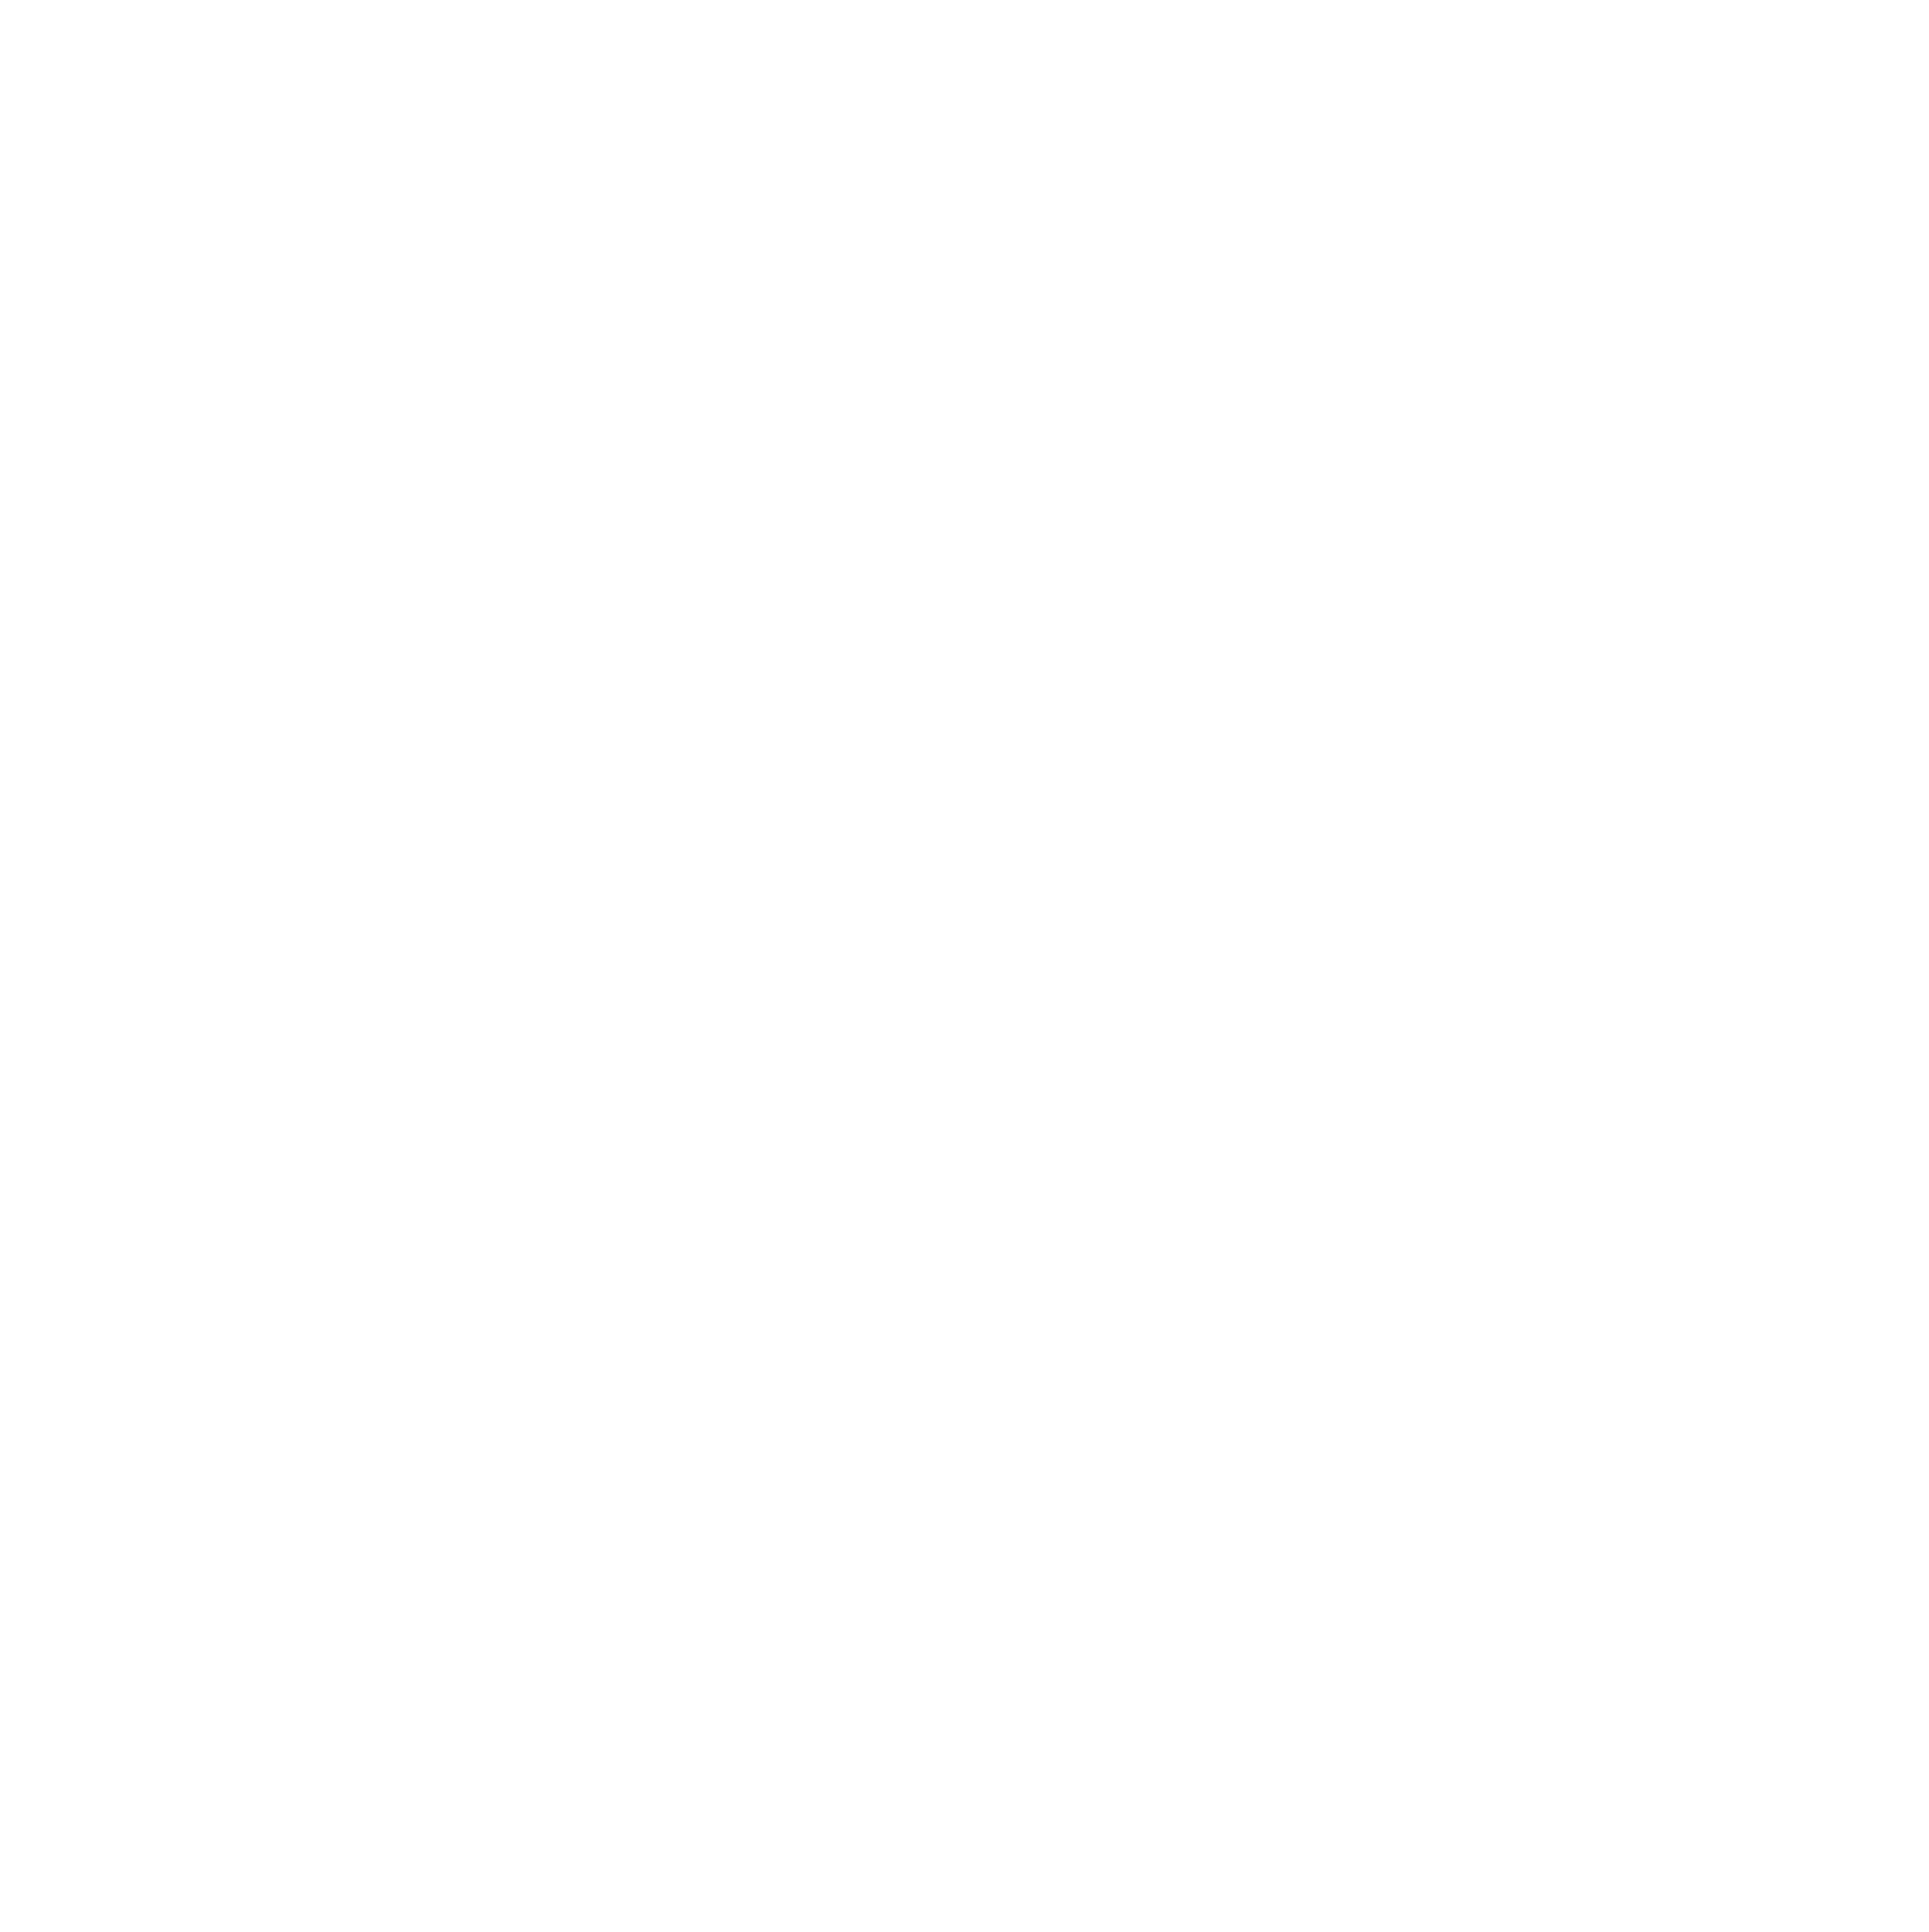 JC Bordelet